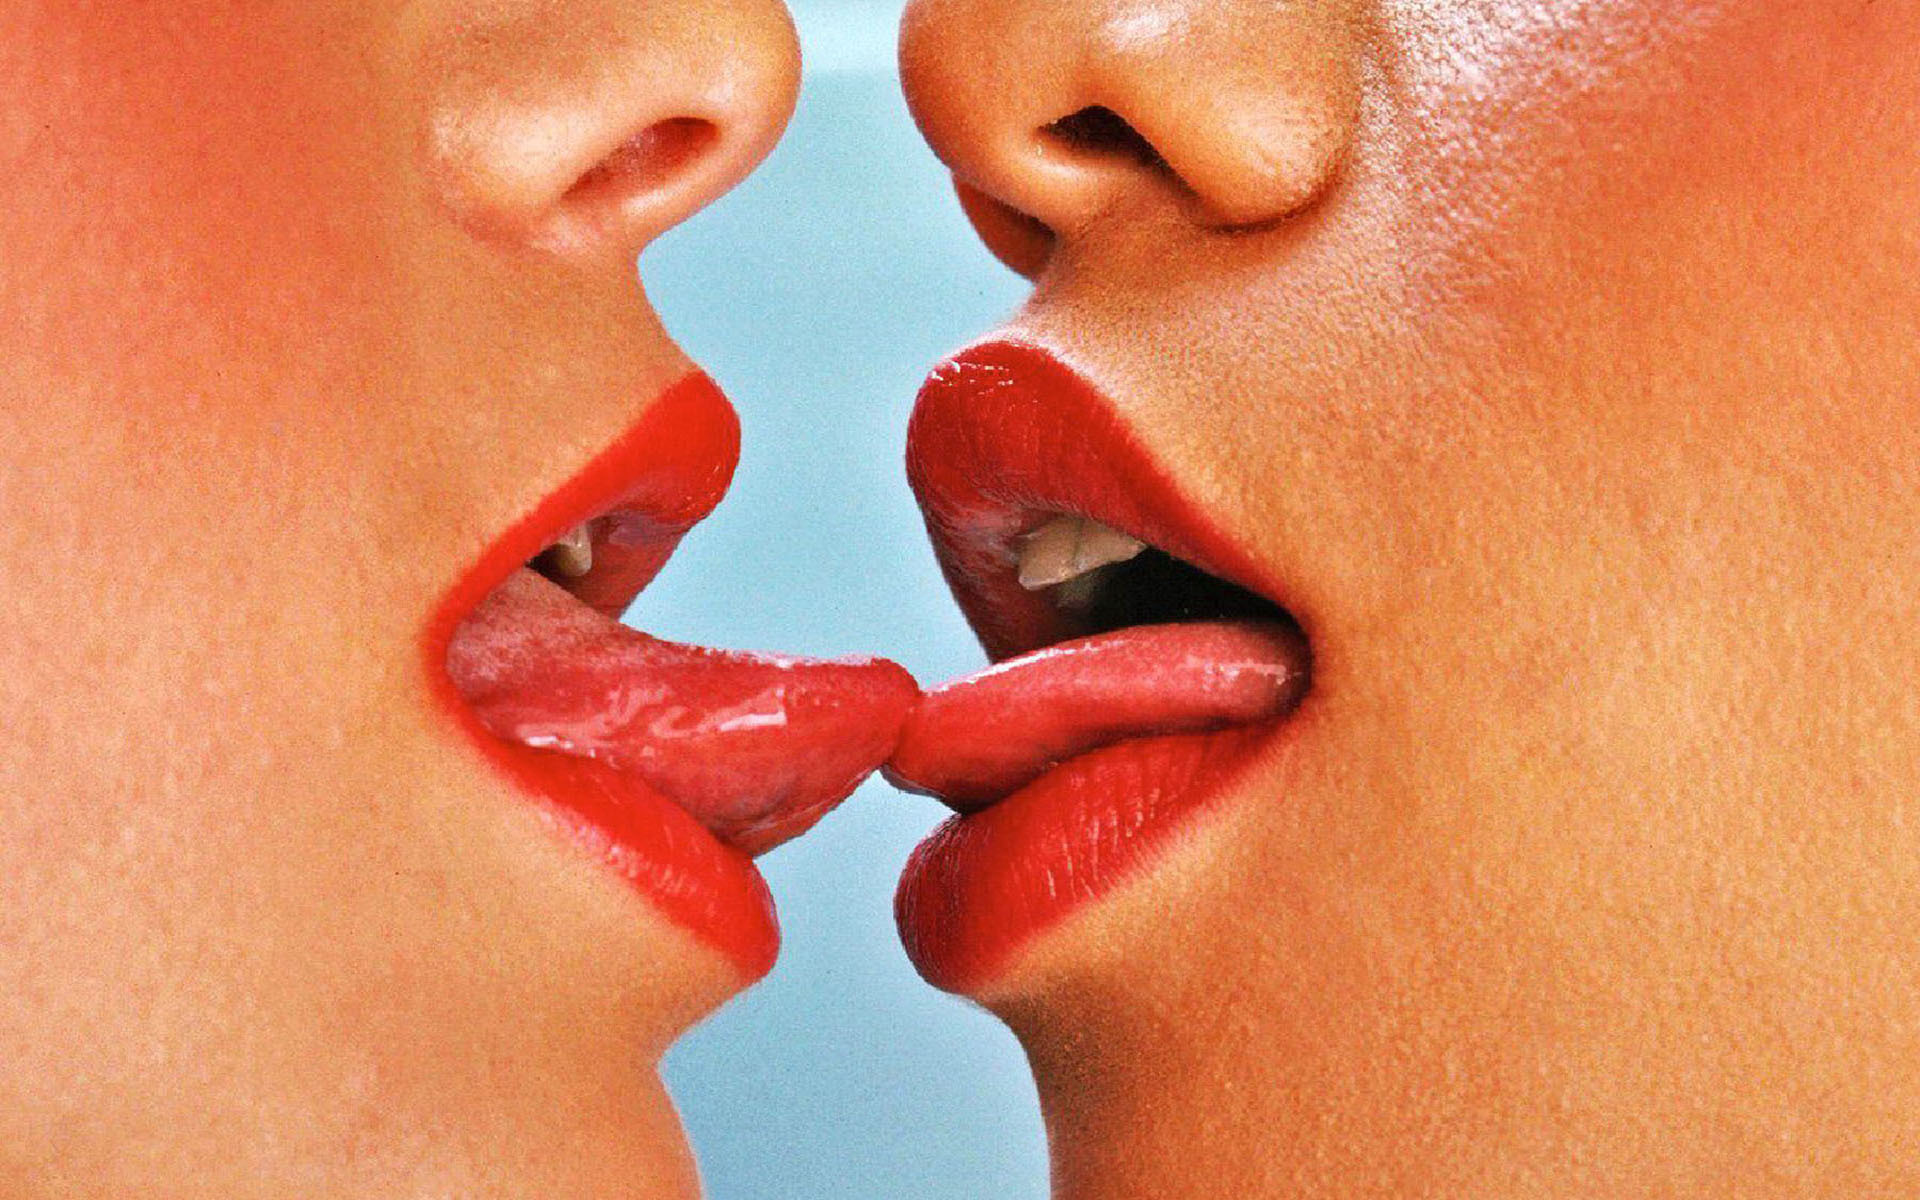 Lips kissing tongue.